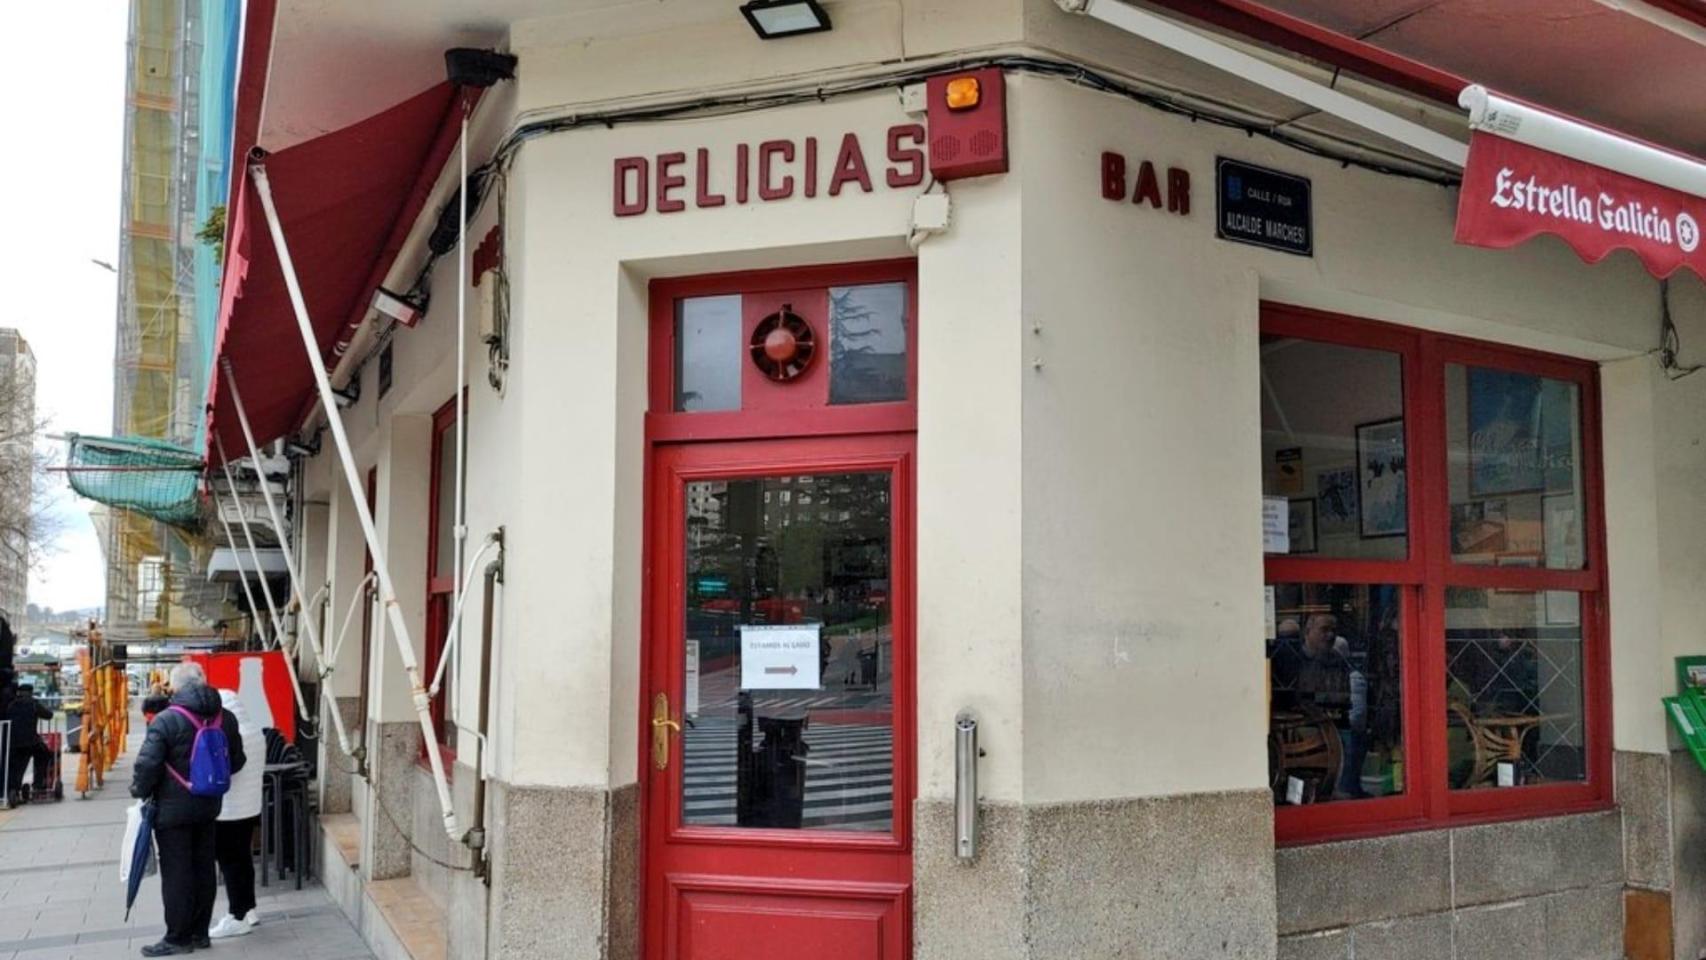 La cafetería Delicias de A Coruña.